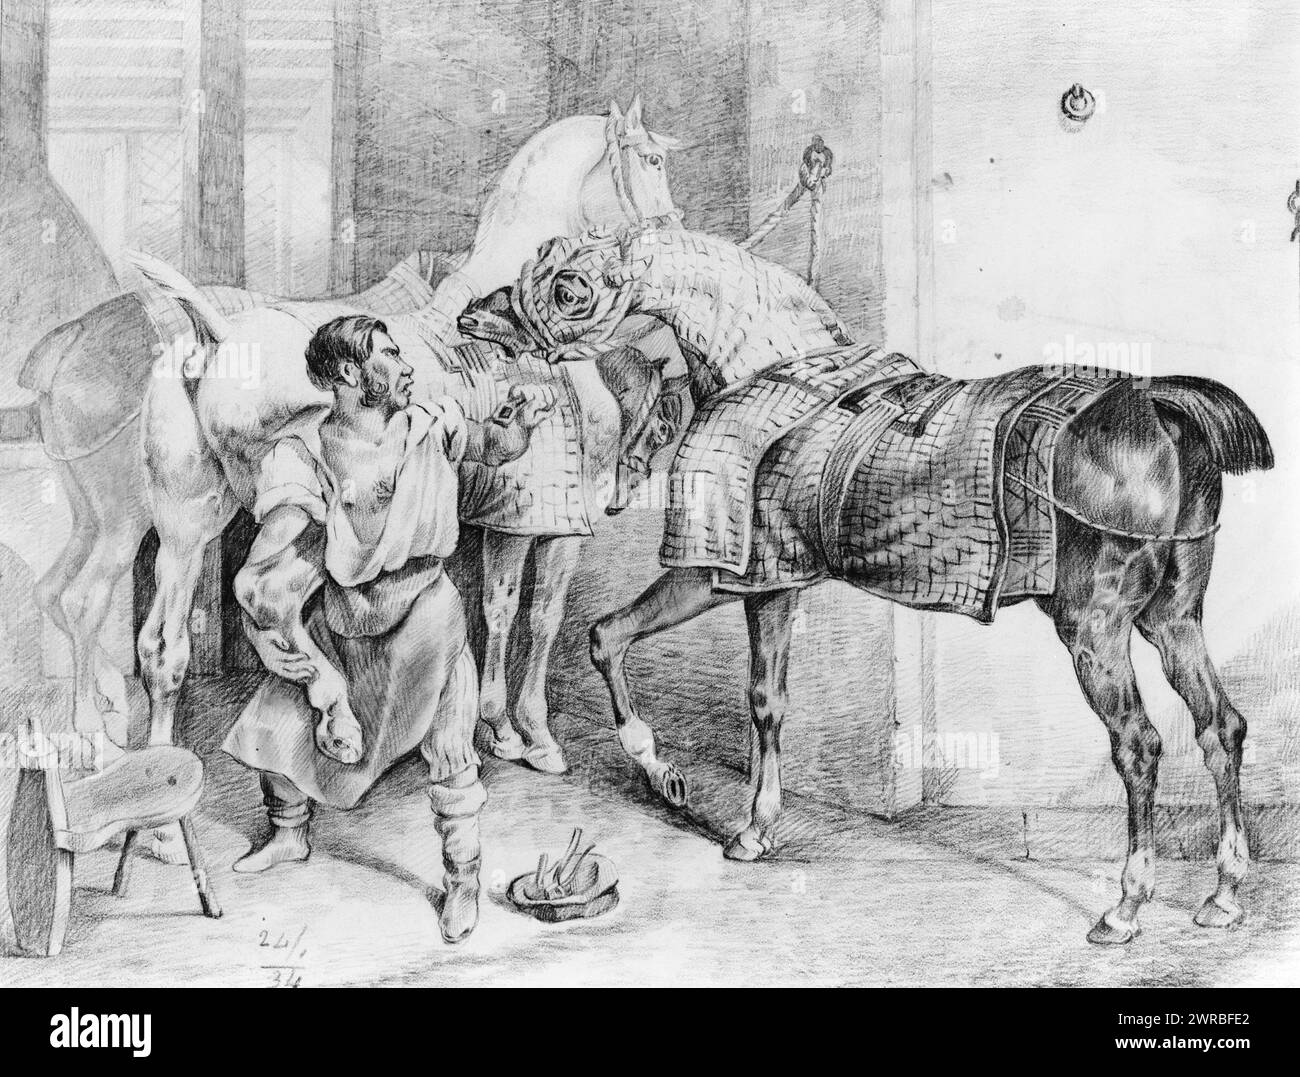 Forgeron essayant de chasser un cheval pendant qu'un autre cheval interfère, 1834?, chevaux, 1830-1840, dessins au crayon, 1830-1840., dessins au crayon, 1830-1840, travaux au crayon, 1830-1840, 1 dessin : crayon noir et graphite, 28 x 37 cm Banque D'Images